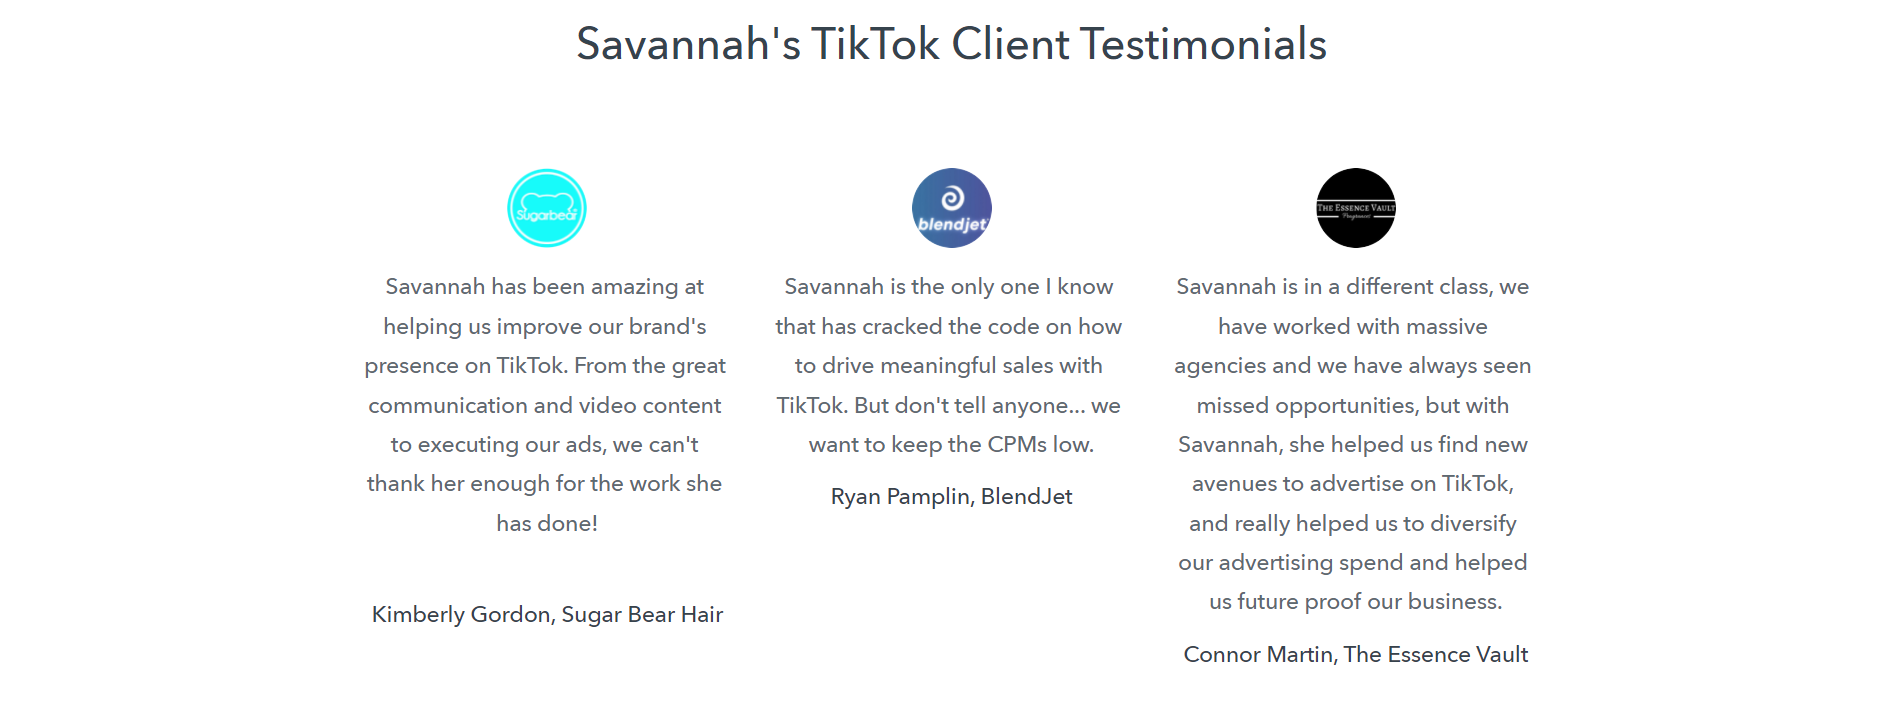 TikTok Ads Course - Grow Your Brand With TikTok Advertising by Savannah Sanchez